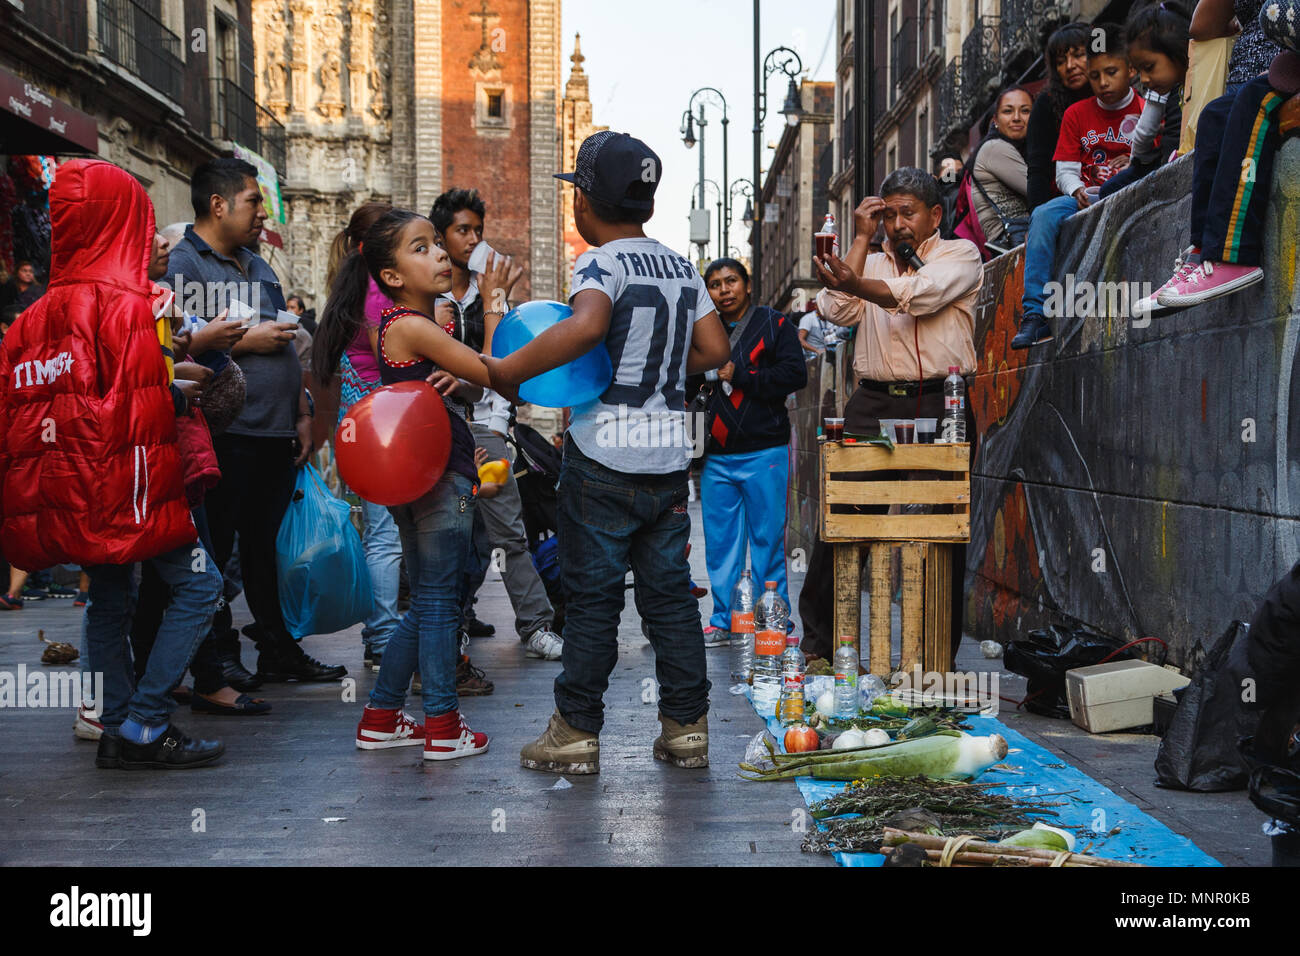 Adultes et enfants se retrouvent autour d'un tonique à base de plantes médicinales traditionnelles des échantillons de dégustation vendeur dans la rue du district central, Mexico, Mexique. Banque D'Images